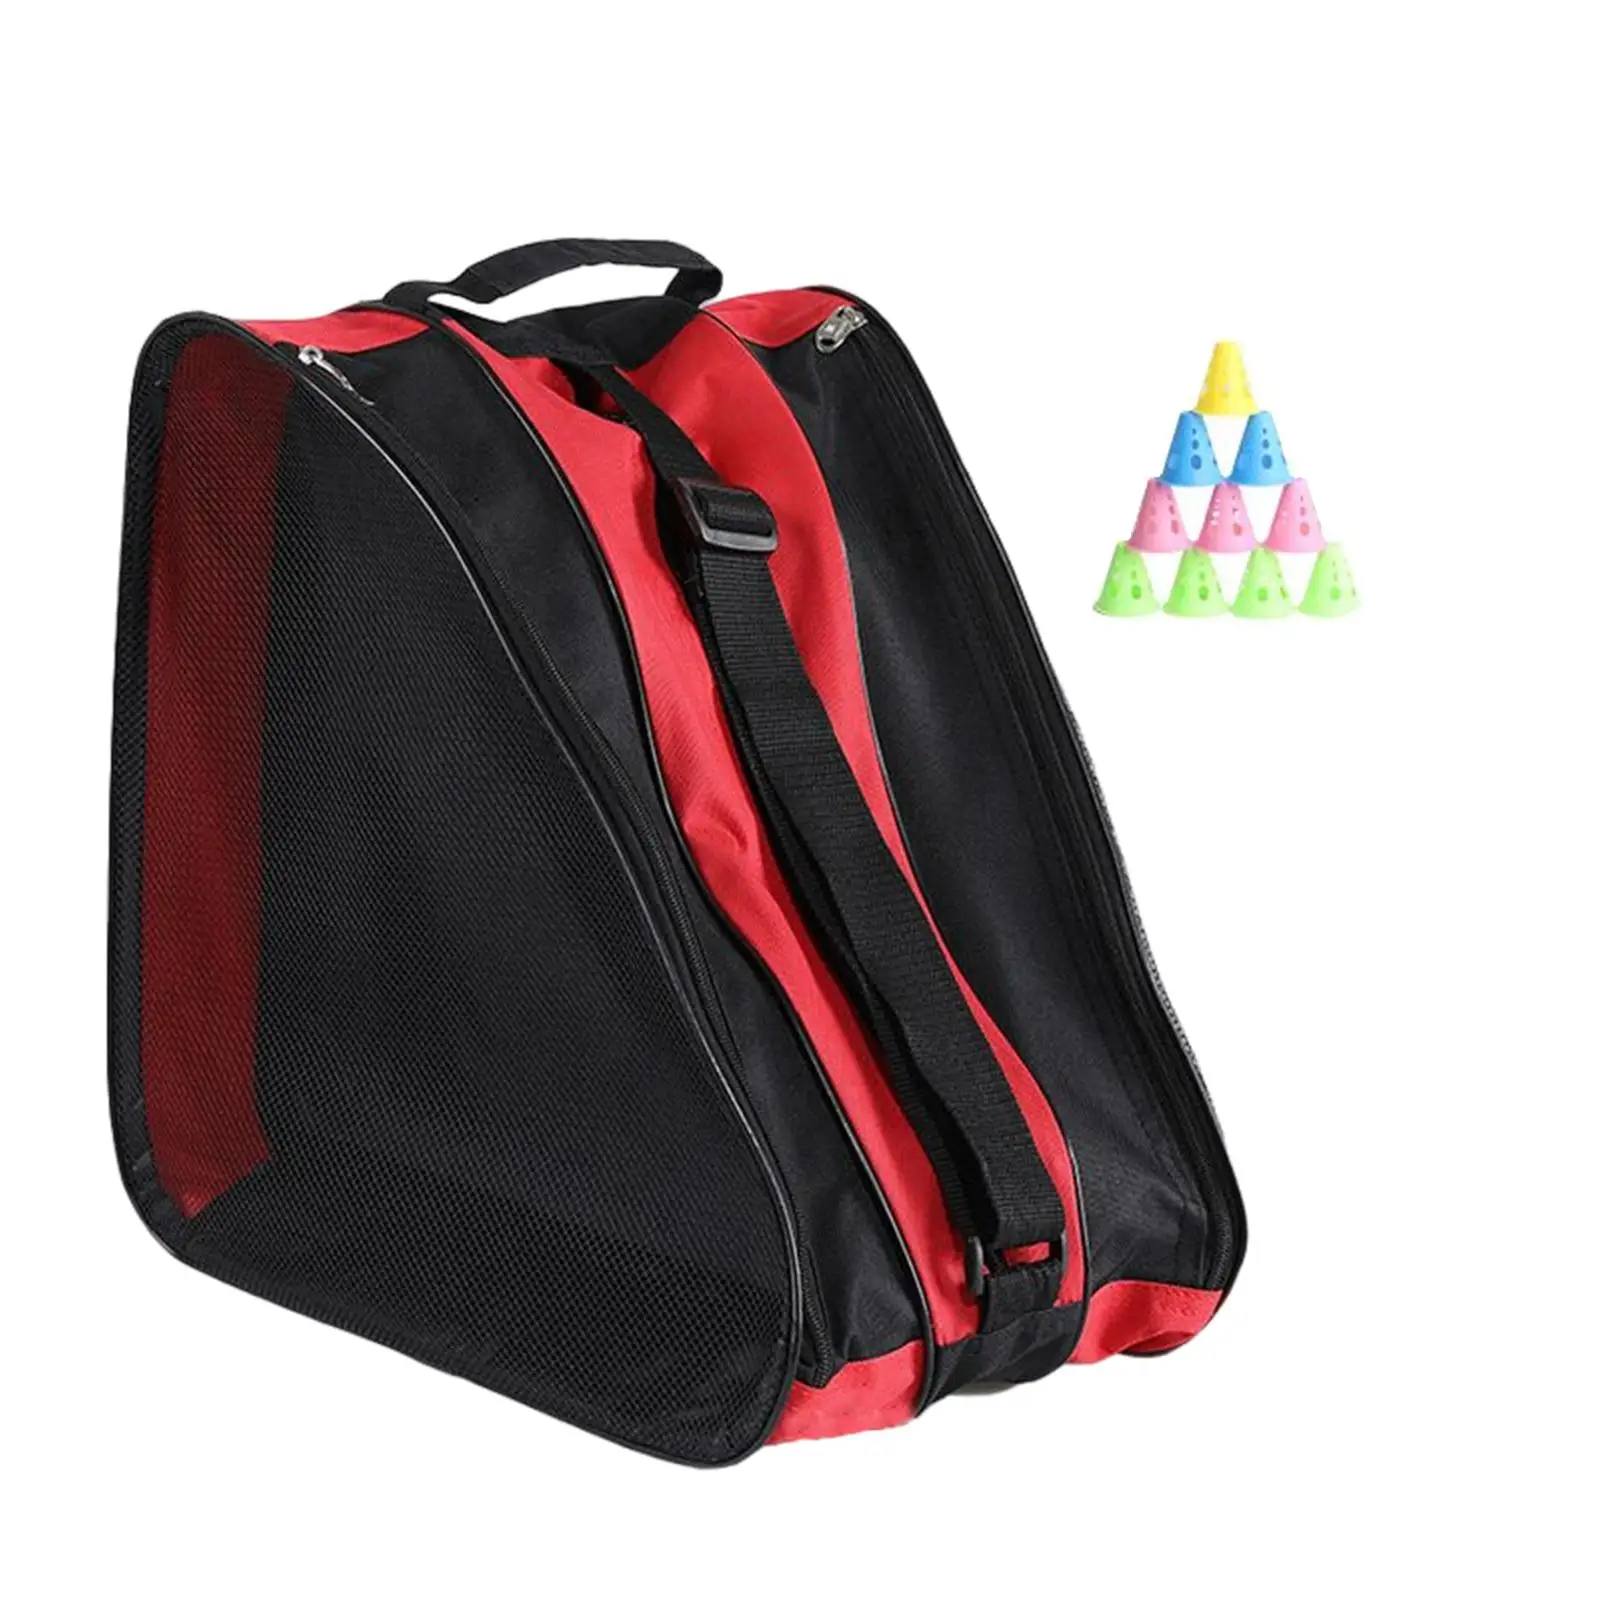 Roller Skate Bag Breathable Ice Skates Bag Protective Gear Skate Carry Case Skating Shoes Storage Bag for Knee Pads